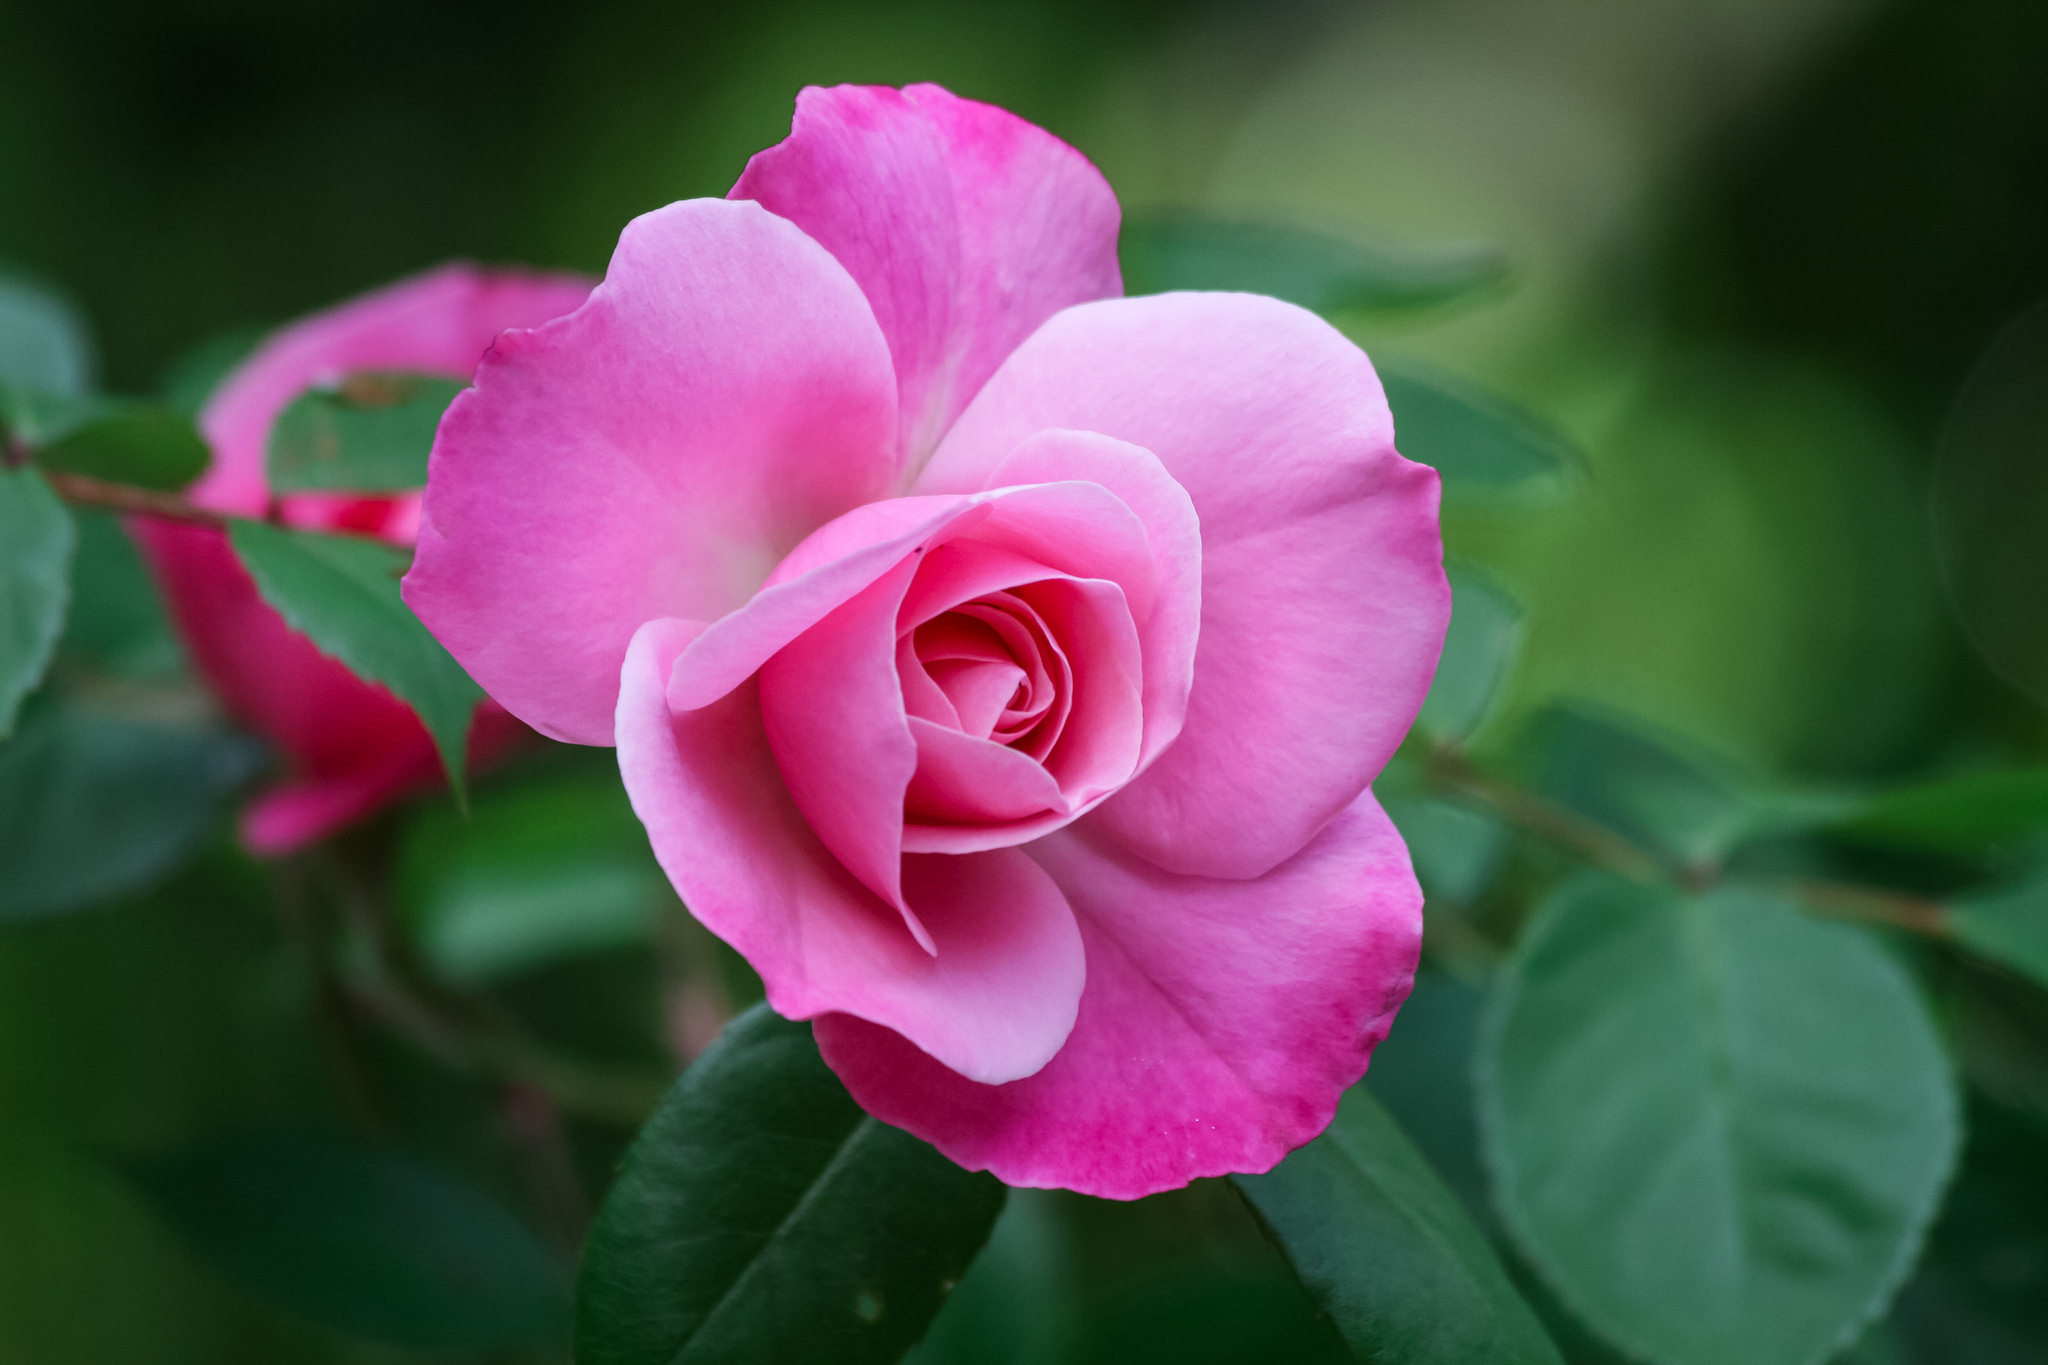 Фото роза маленький цветок розовый цветок - бесплатные картинки на Fonwall